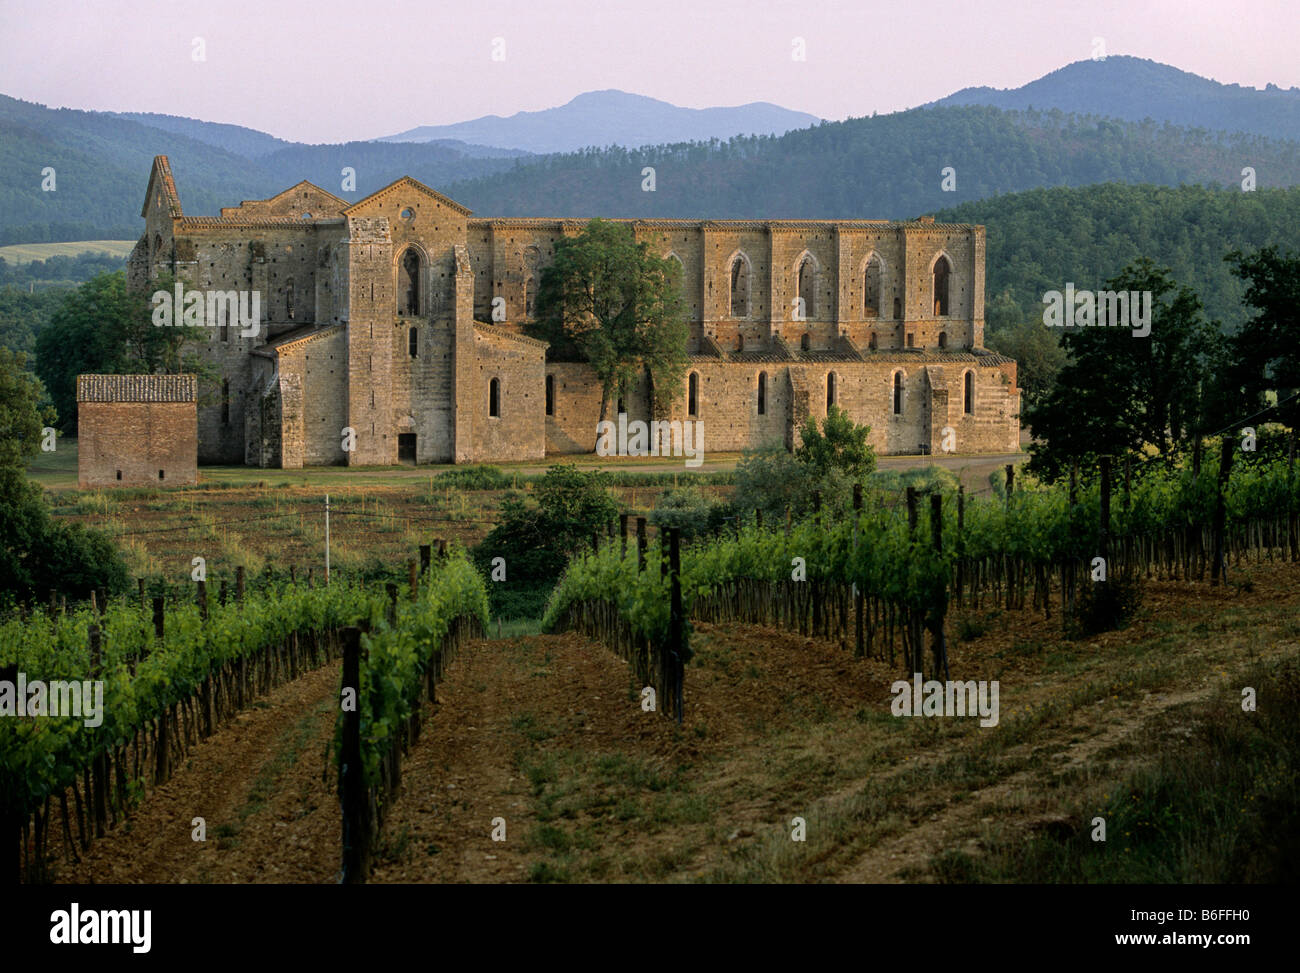 Ruins of the abbey basilica, Cistercian Abbey of San Galgano near Chiusdino, Province of Siena, Tuscany, Italy, Europe Stock Photo